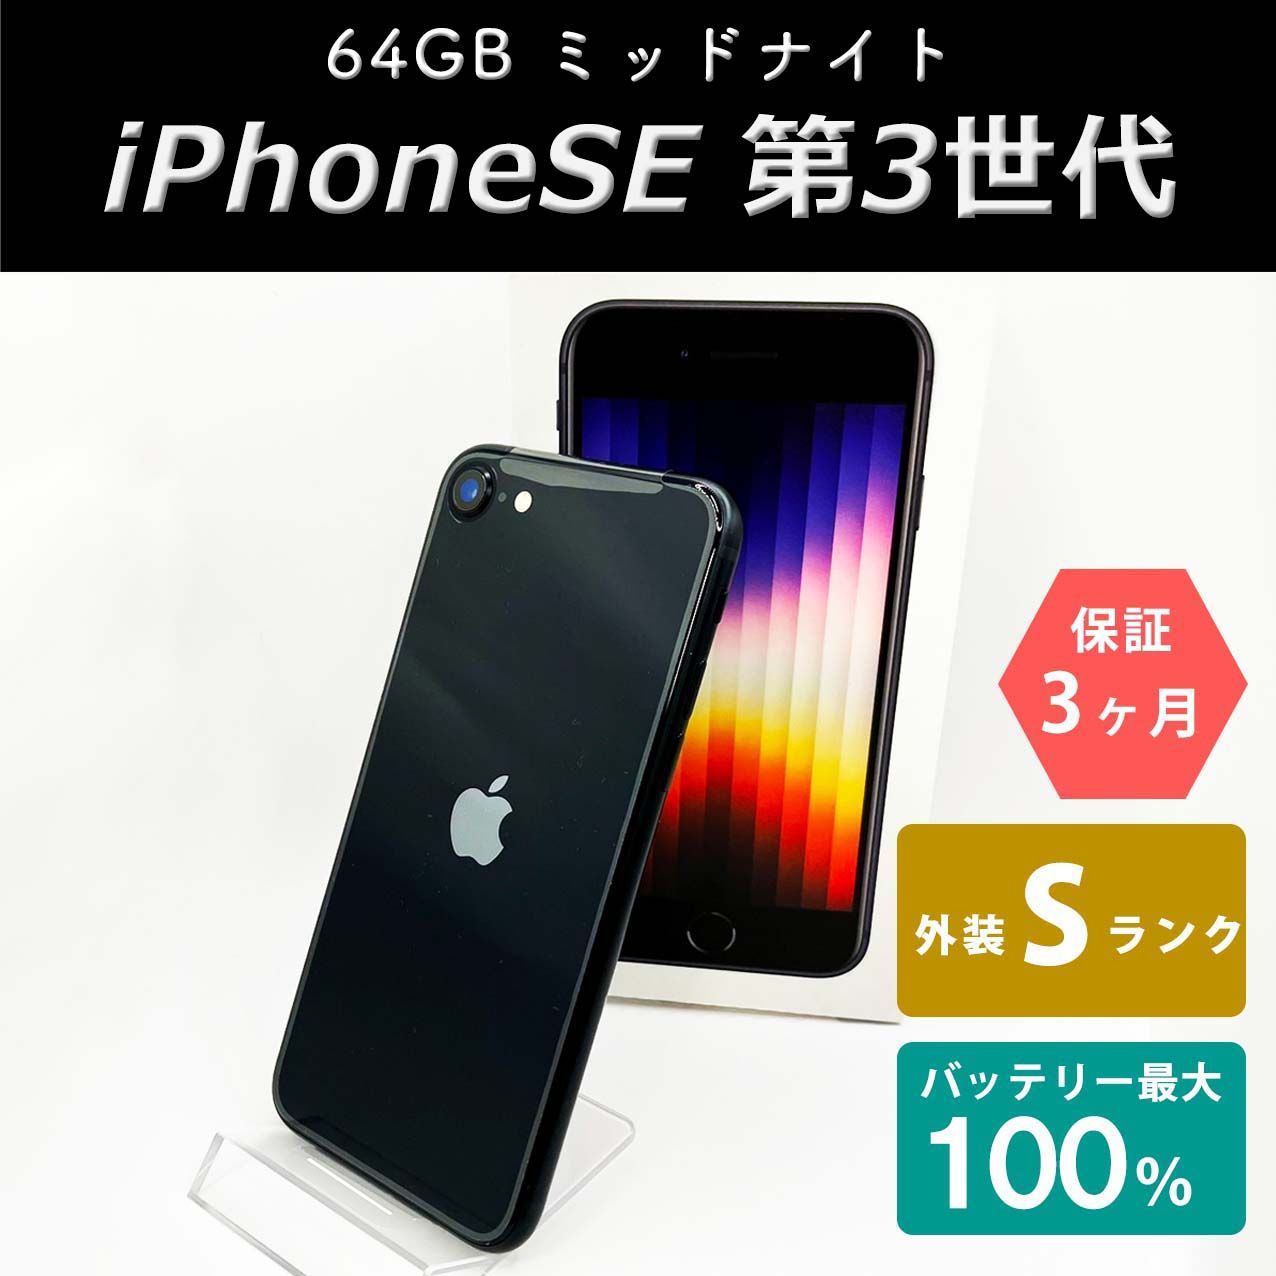 【新品未開封】iPhoneSE 3世代 64GB ミッドナイト